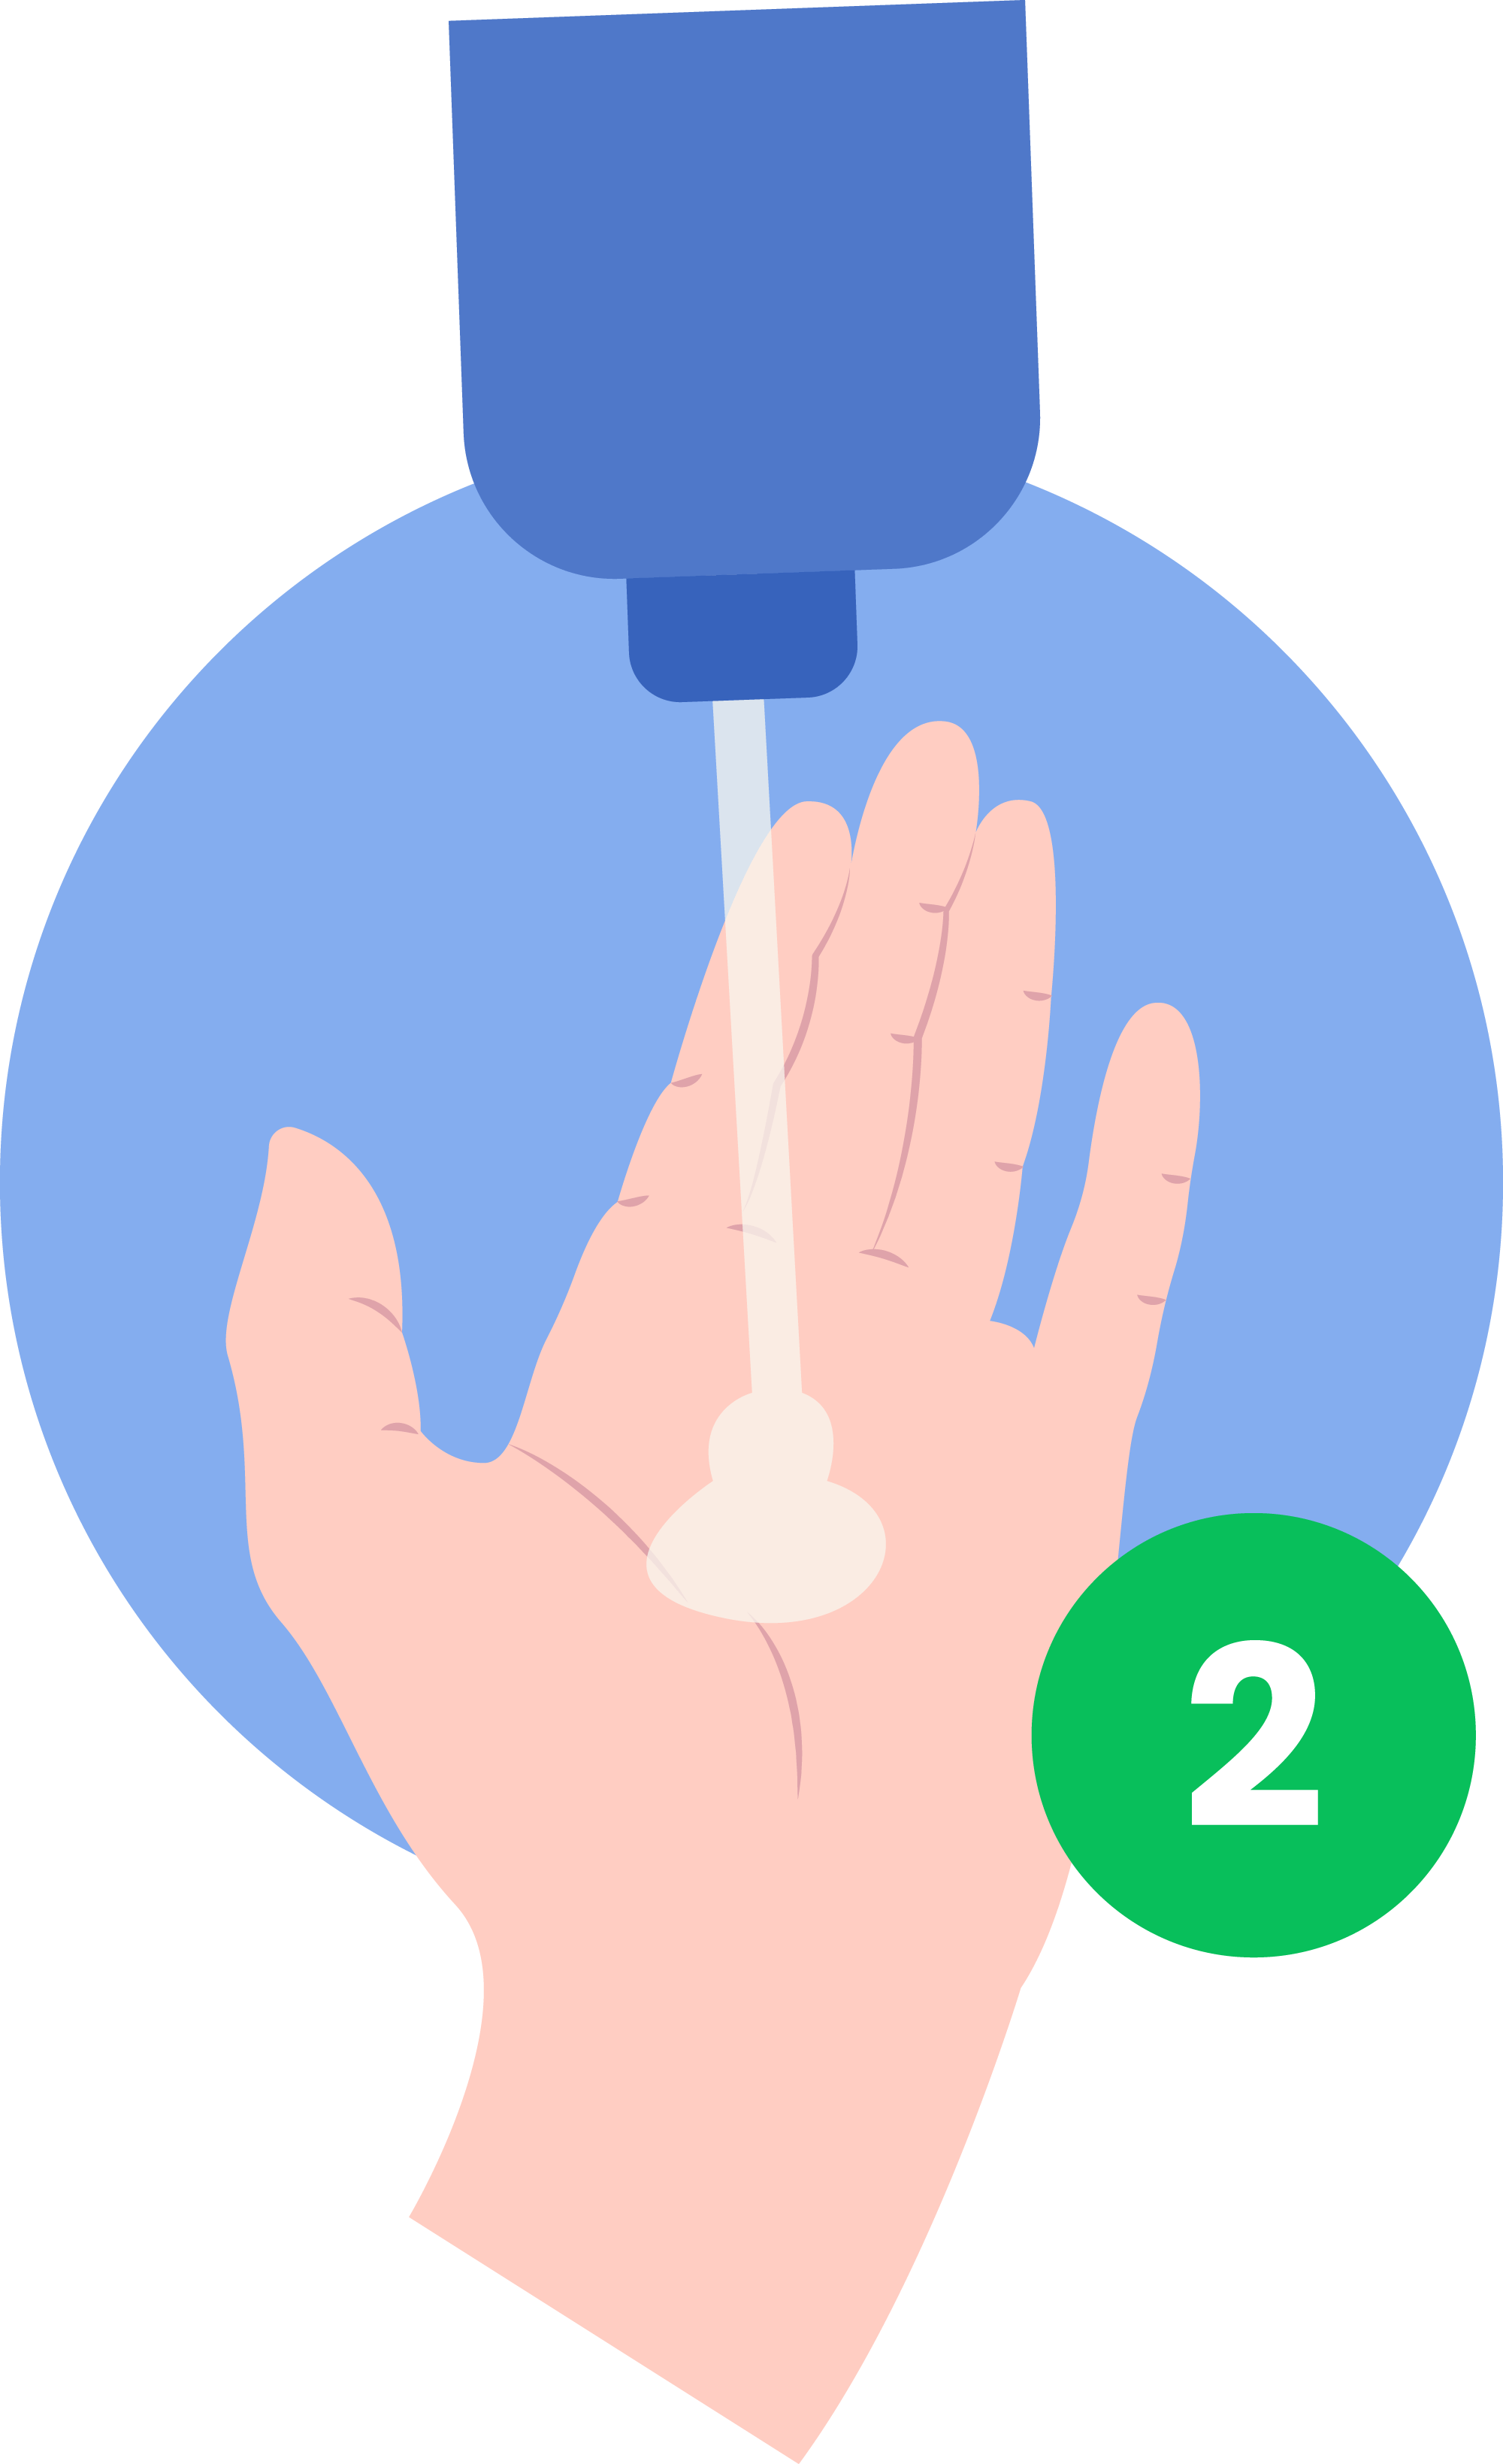 Hygienemaßnahmen und persönliche Schutzausrüstung Teil 1